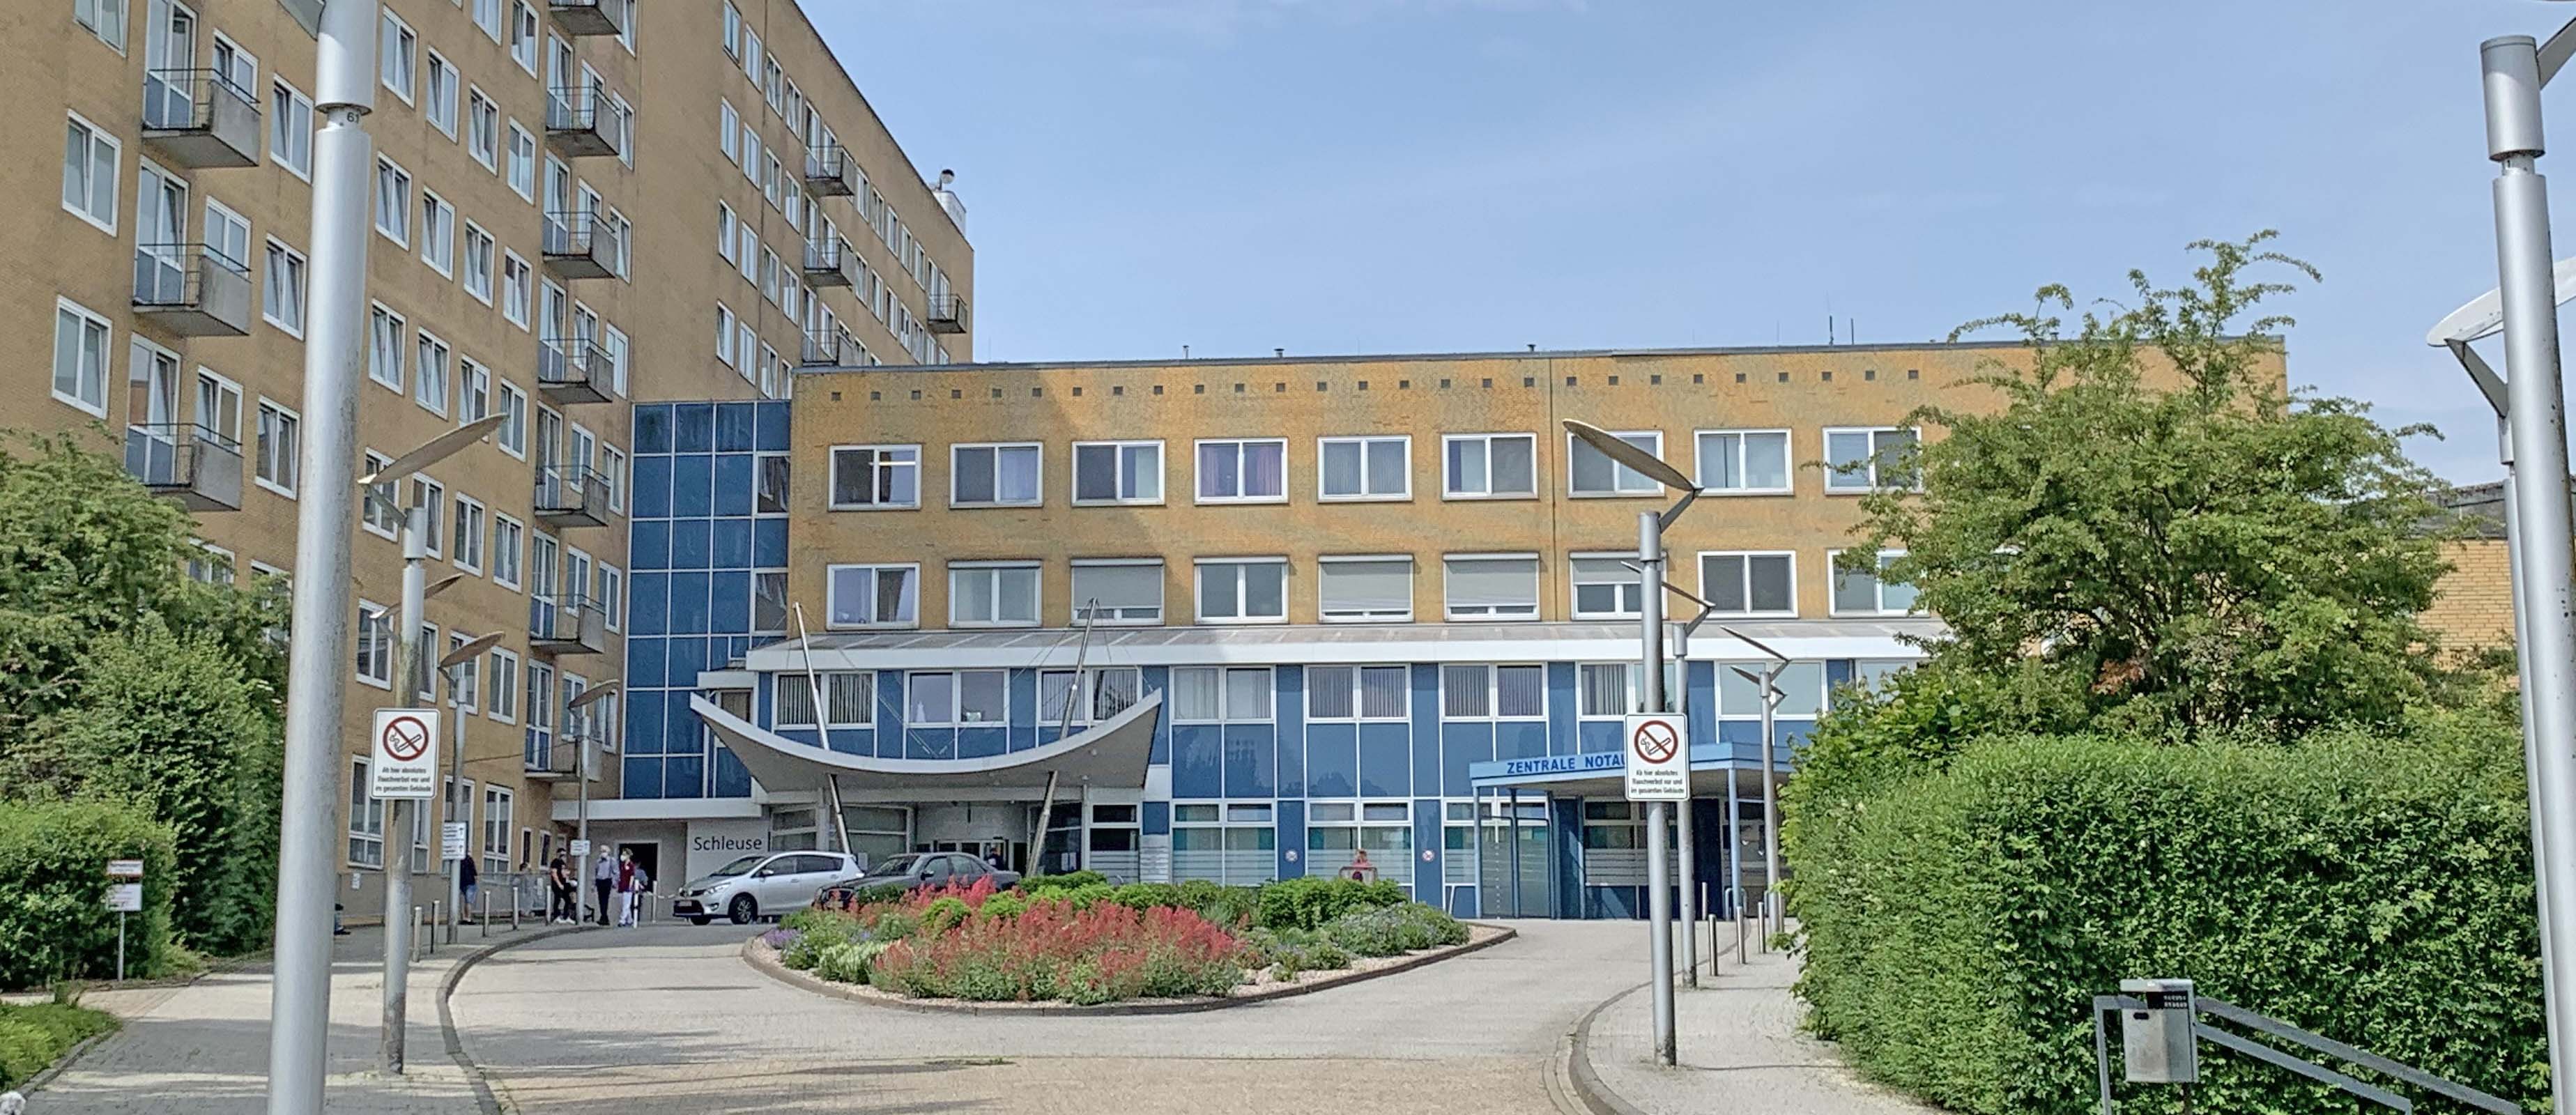 Klinikum Wilhelmshaven Haupteingang